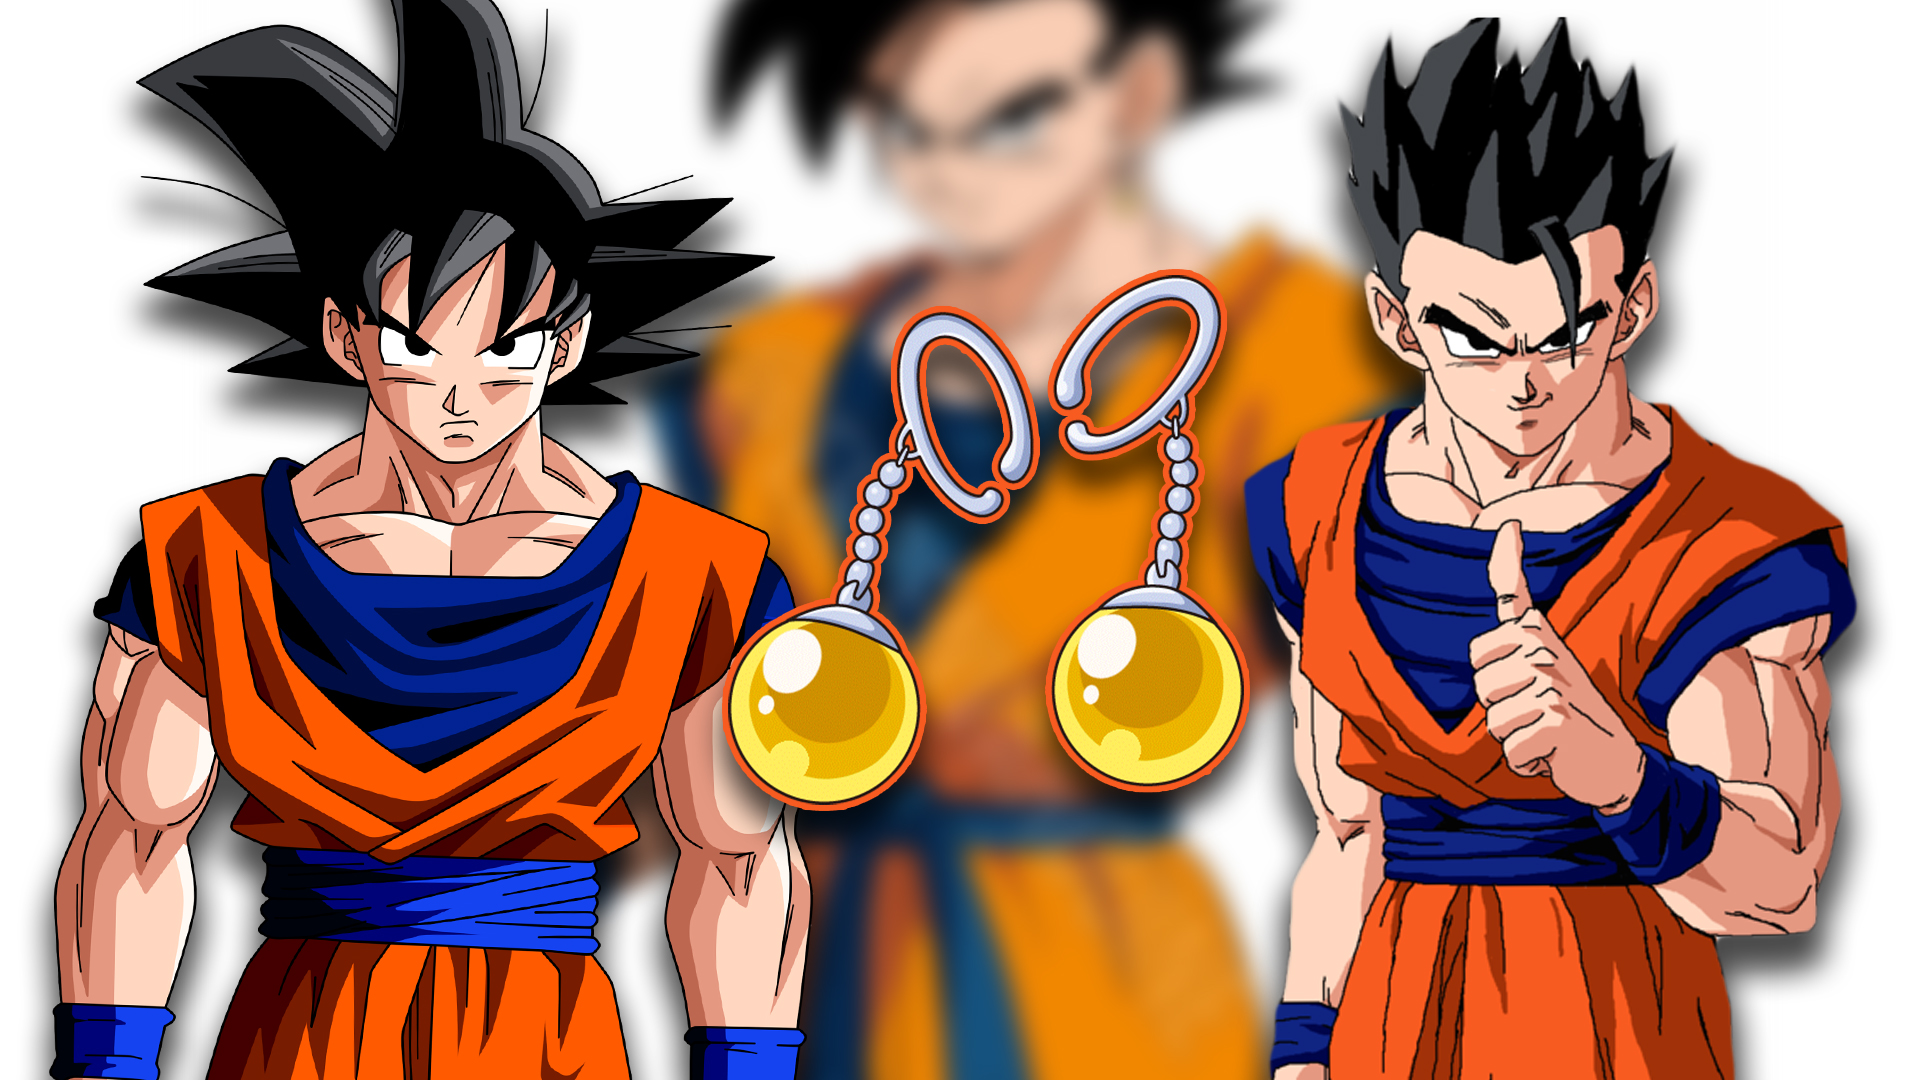 Dragon Ball: Assim seria a fusão do Goku com seu filho Gohan